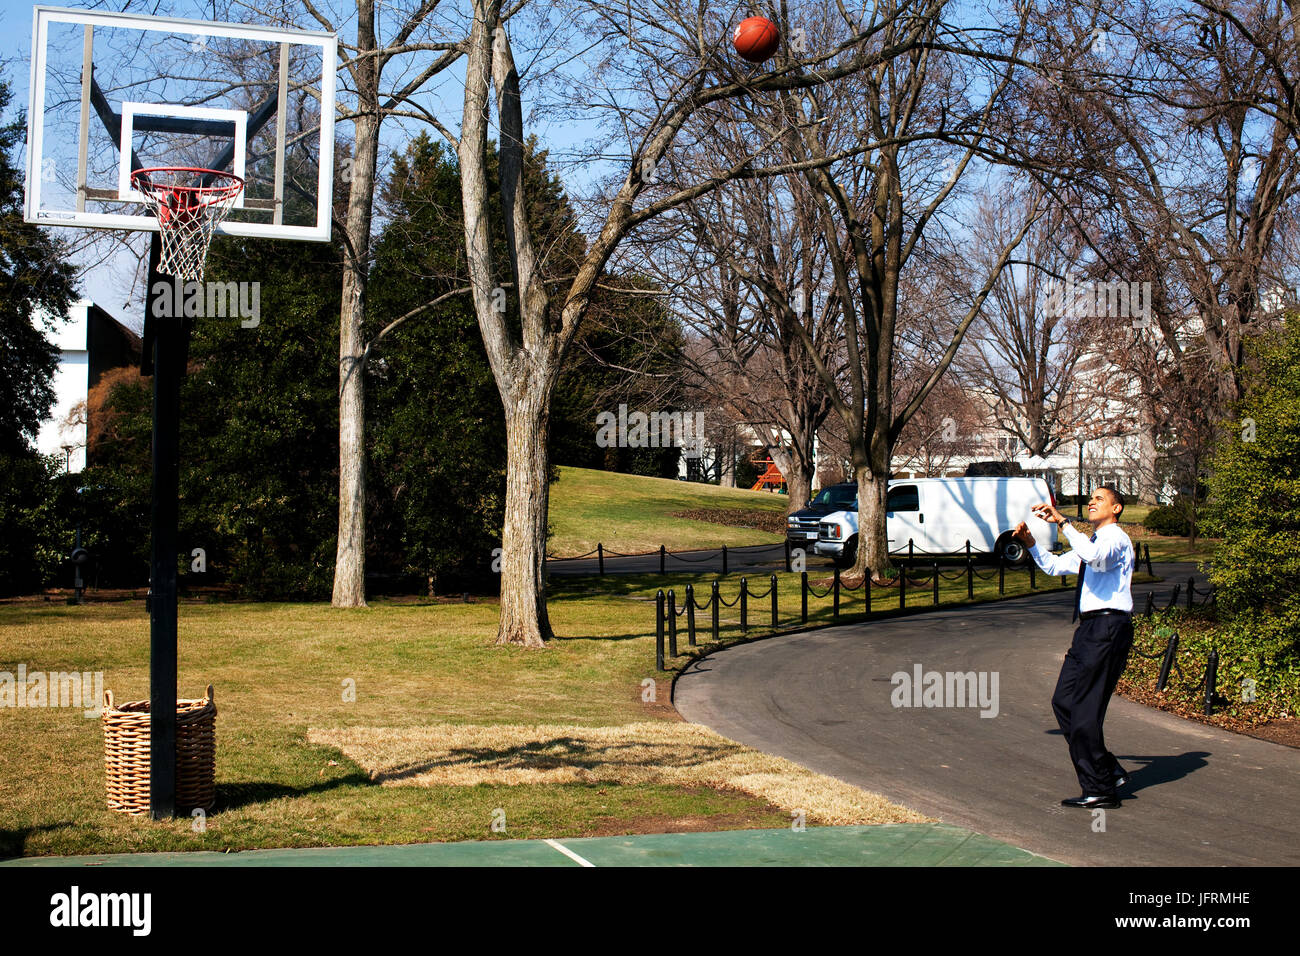 Le président Barack Obama tire-ball sur la pelouse Sud de la Maison Blanche de basket-ball 3/6/09. Photo Officiel de la Maison Blanche par Pete Souza Banque D'Images